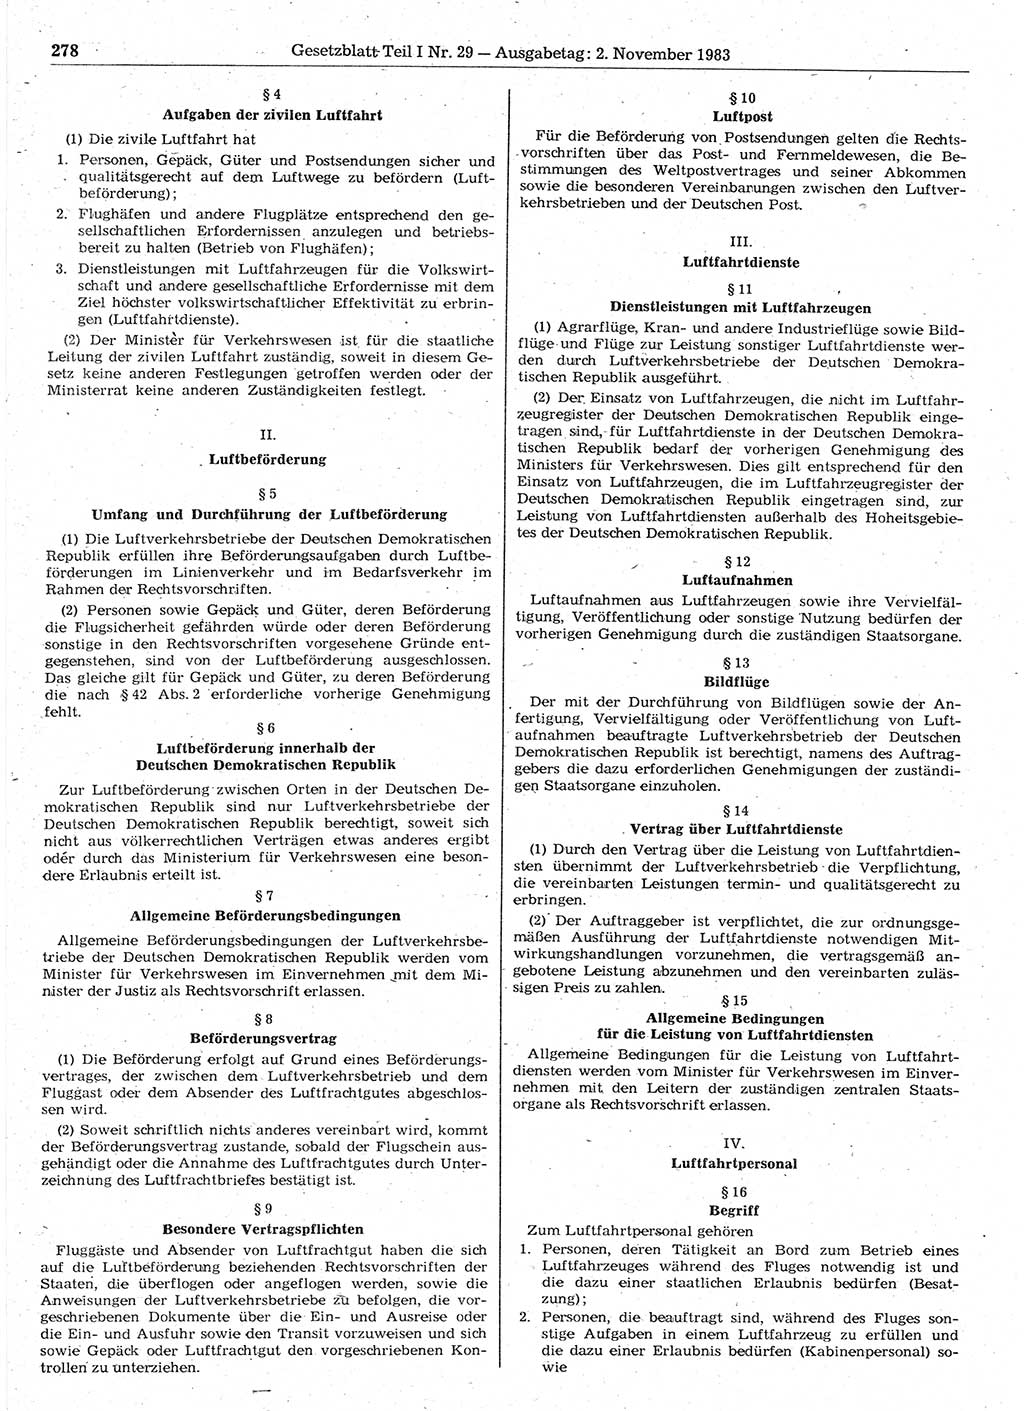 Gesetzblatt (GBl.) der Deutschen Demokratischen Republik (DDR) Teil Ⅰ 1983, Seite 278 (GBl. DDR Ⅰ 1983, S. 278)